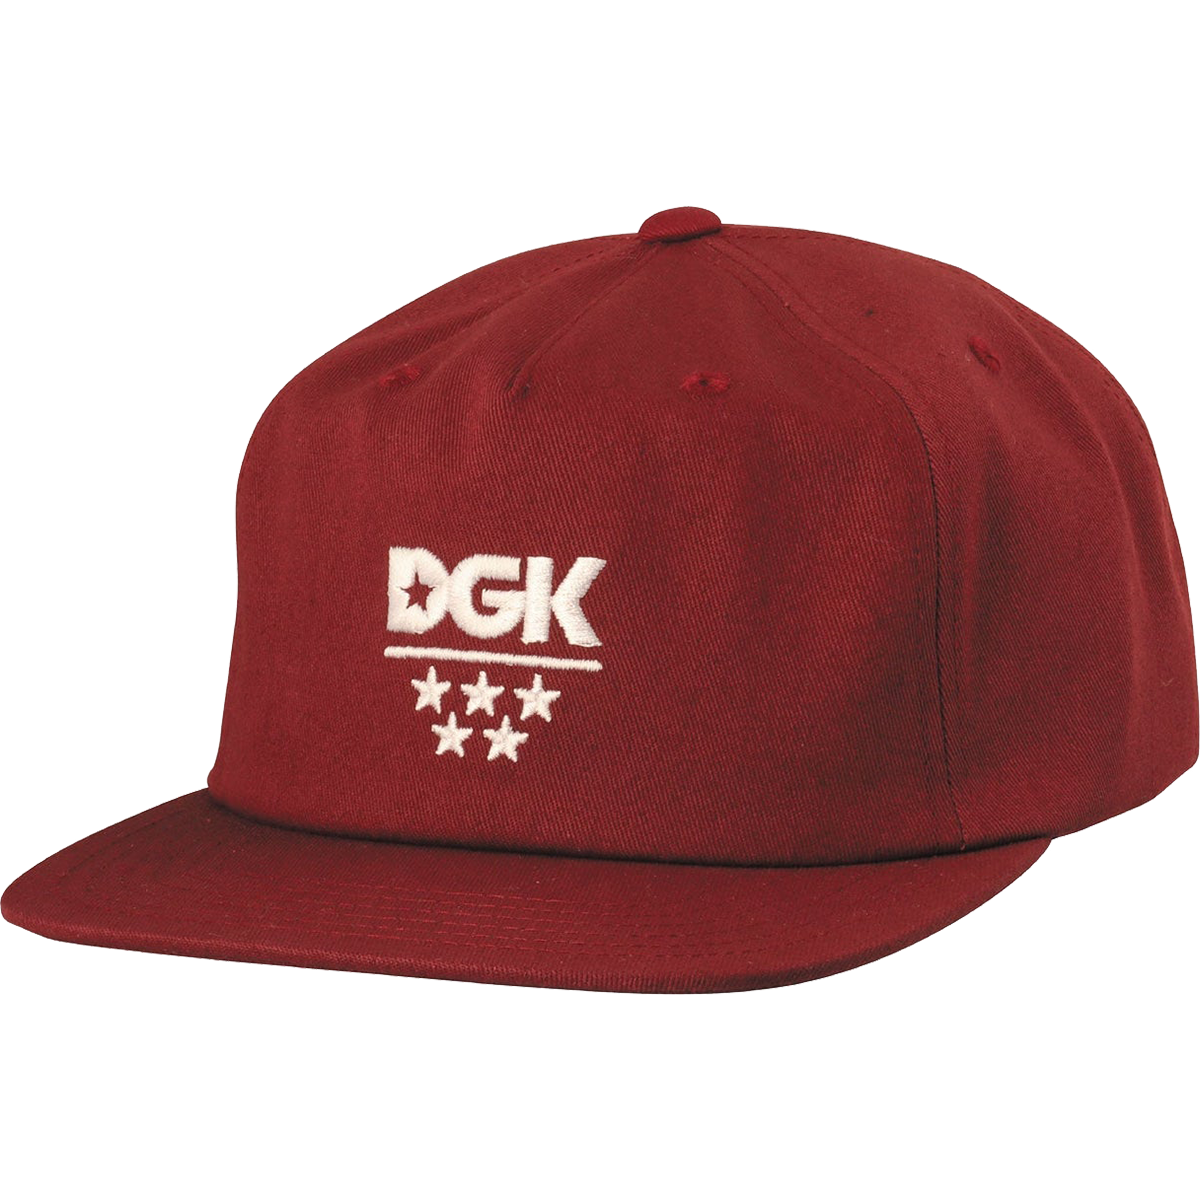 Dgk All Star Hat Burgundy